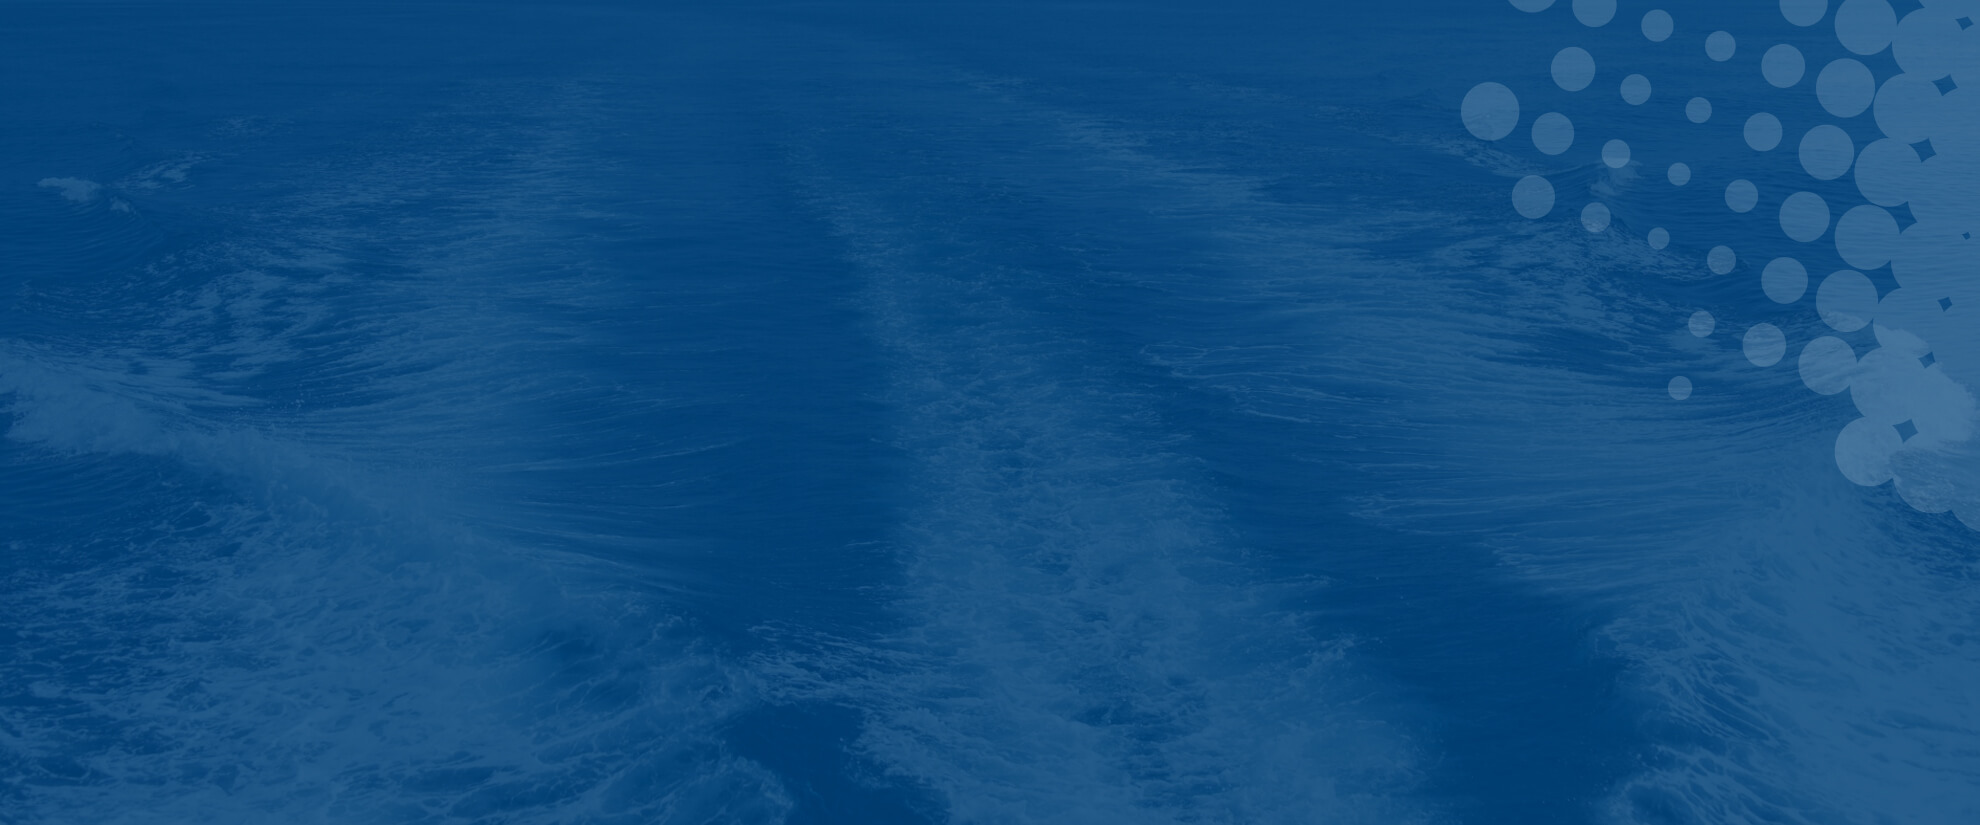 Ship's wake overlaying blue background